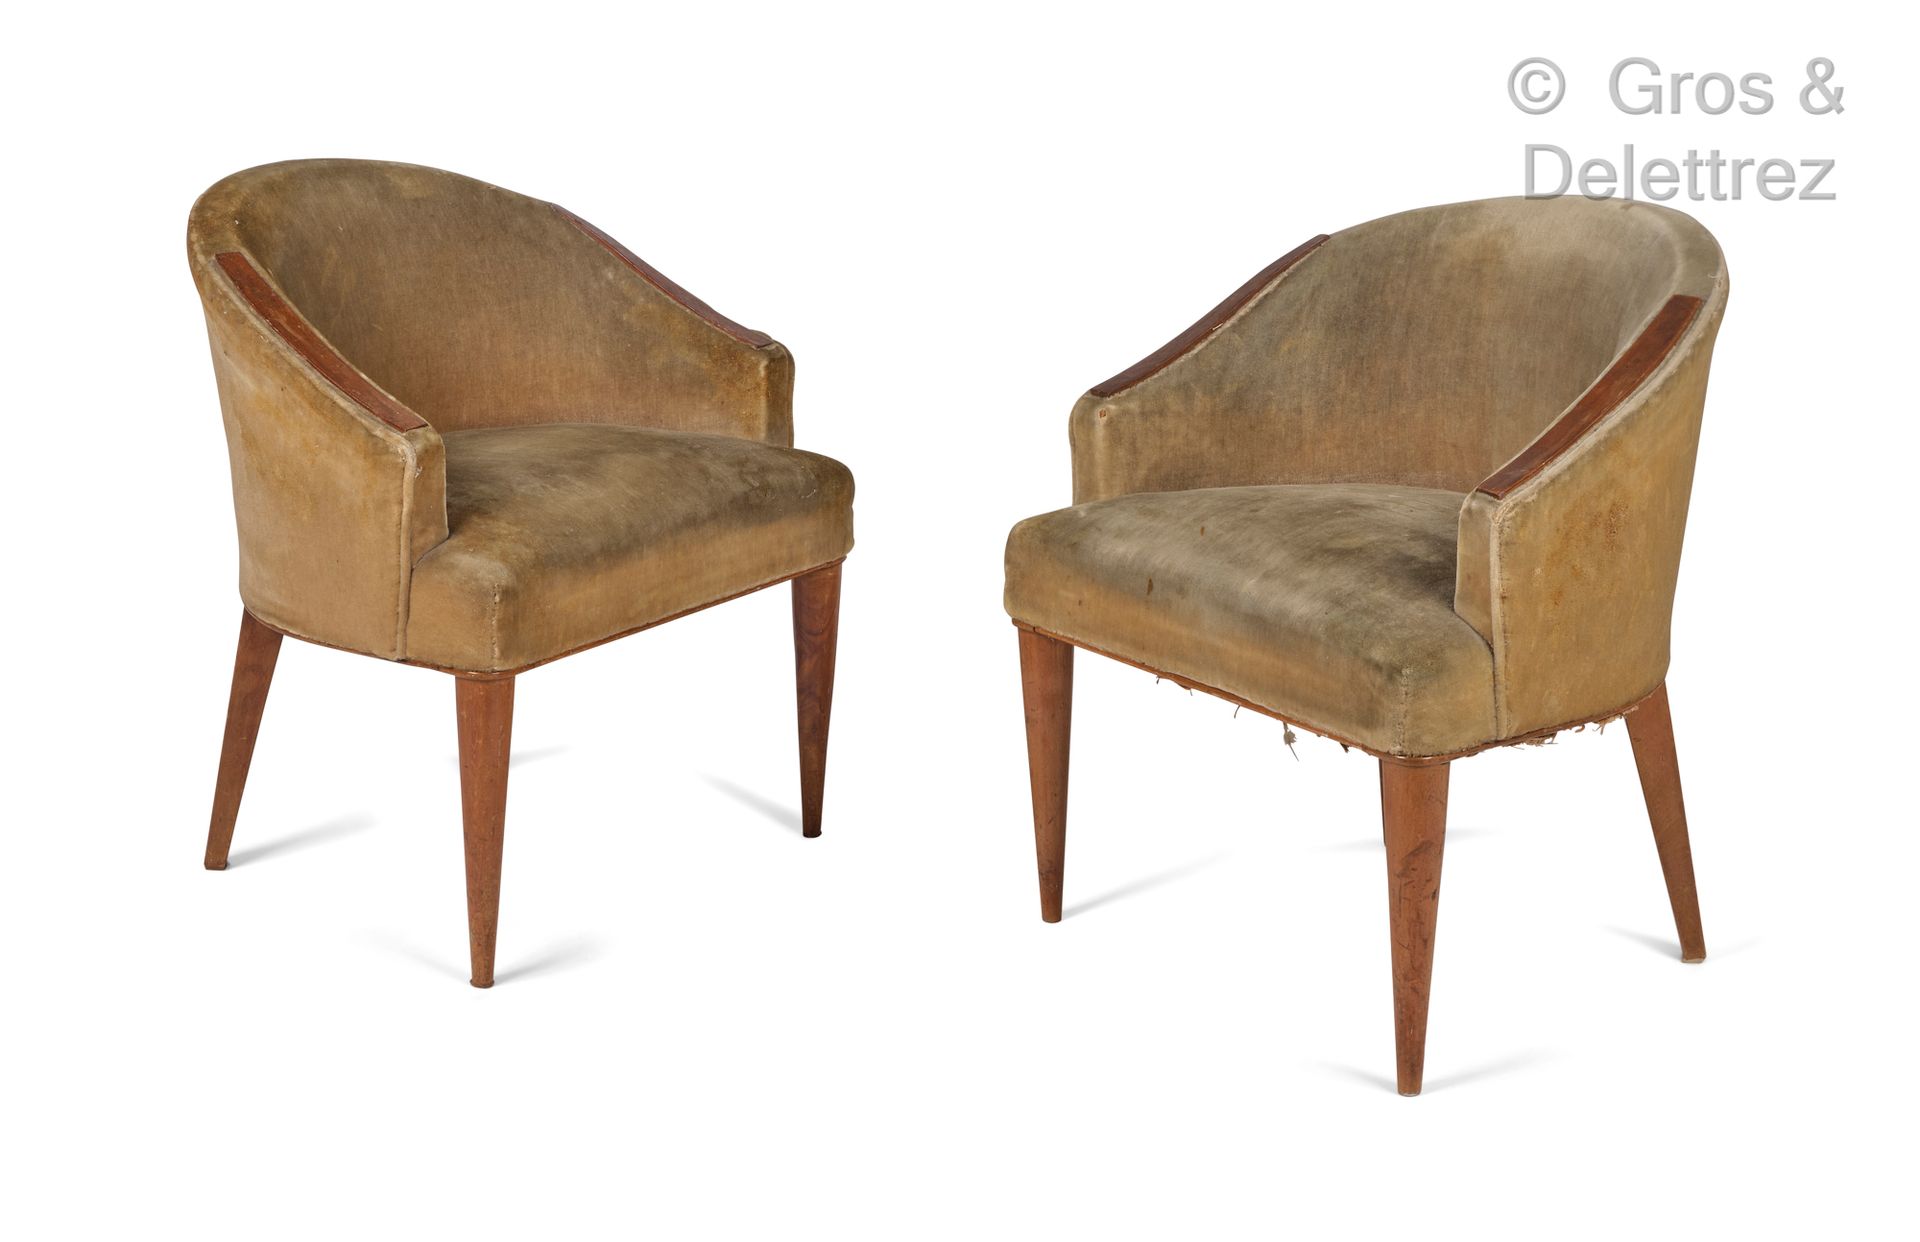 TRAVAIL FRANCAIS 1930-1950 Ein Paar niedrige Sessel aus gebeizter Buche.

Garnit&hellip;